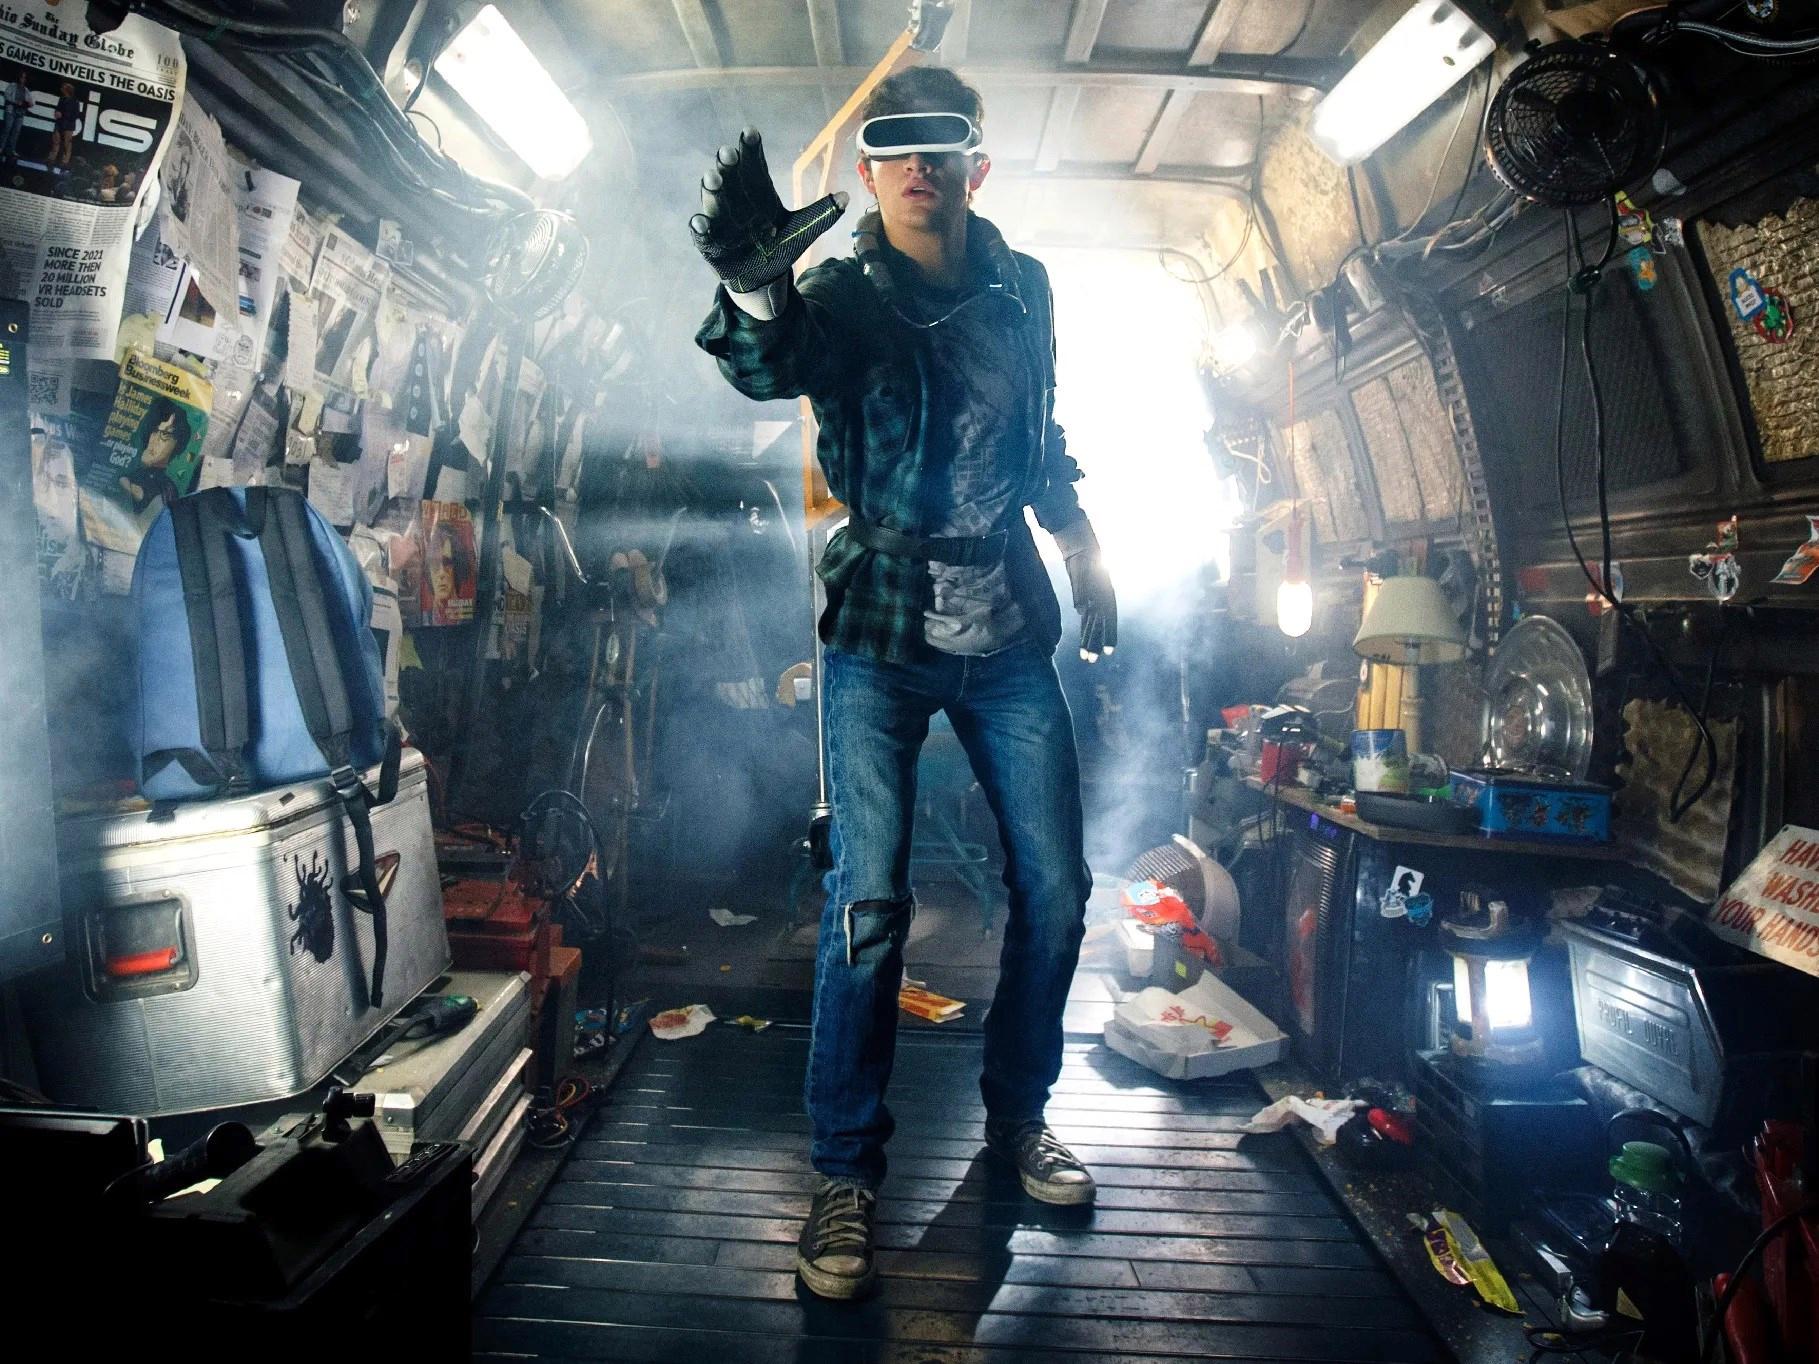 Yeni VR koşu bandı geleceğin oyun şeklini ortaya koyuyor